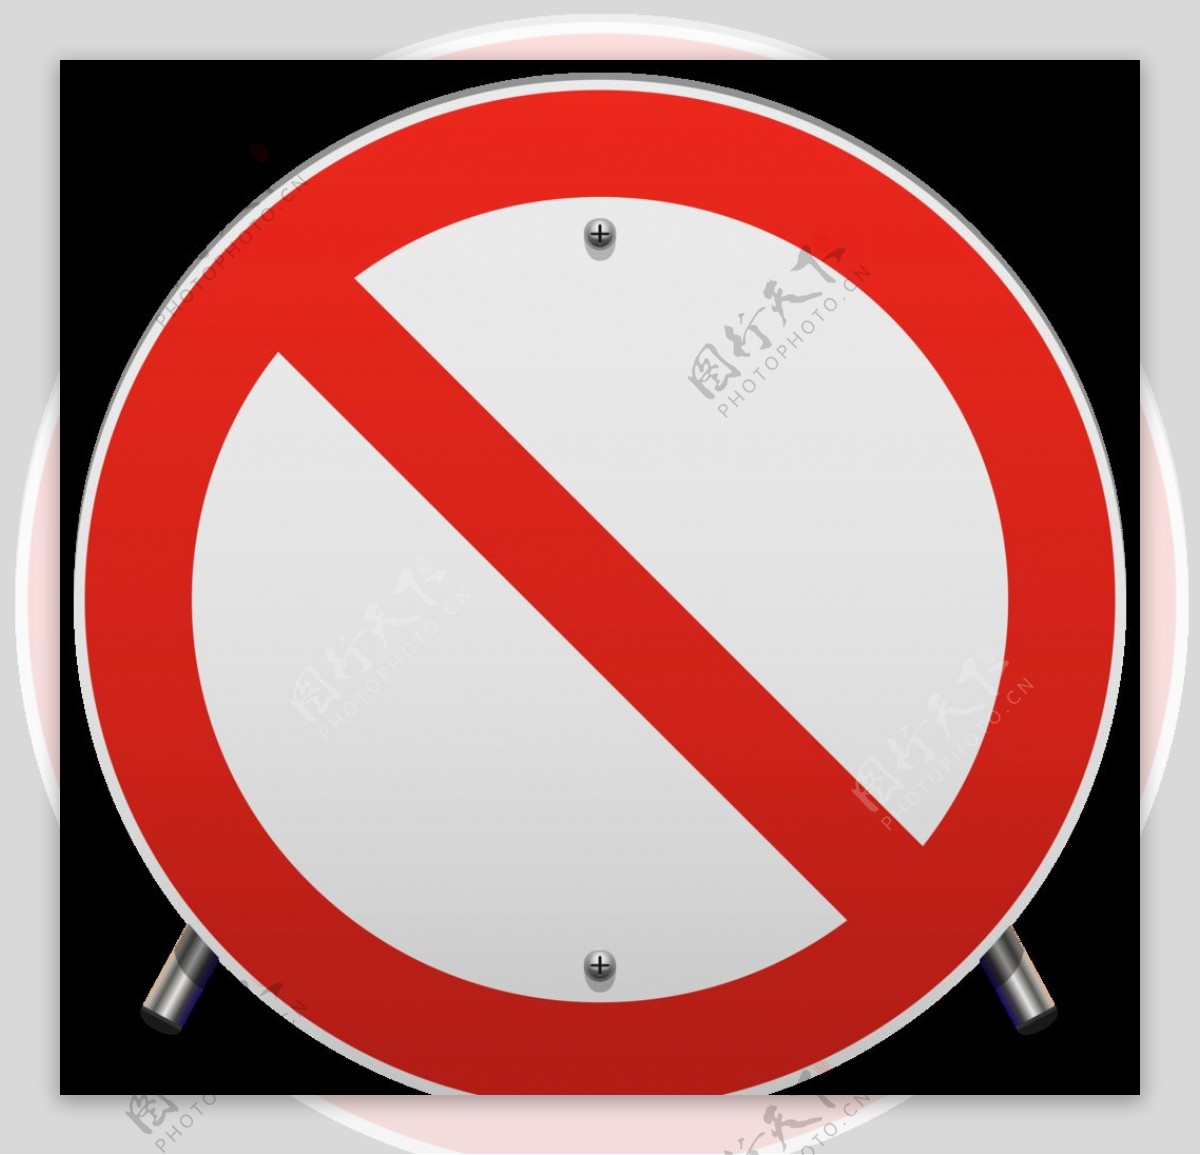 交通圖標設計 卡通圖標設計 交通圖標 禁止, 卡通圖標設計, No, 交通素材圖案，PSD和PNG圖片免費下載